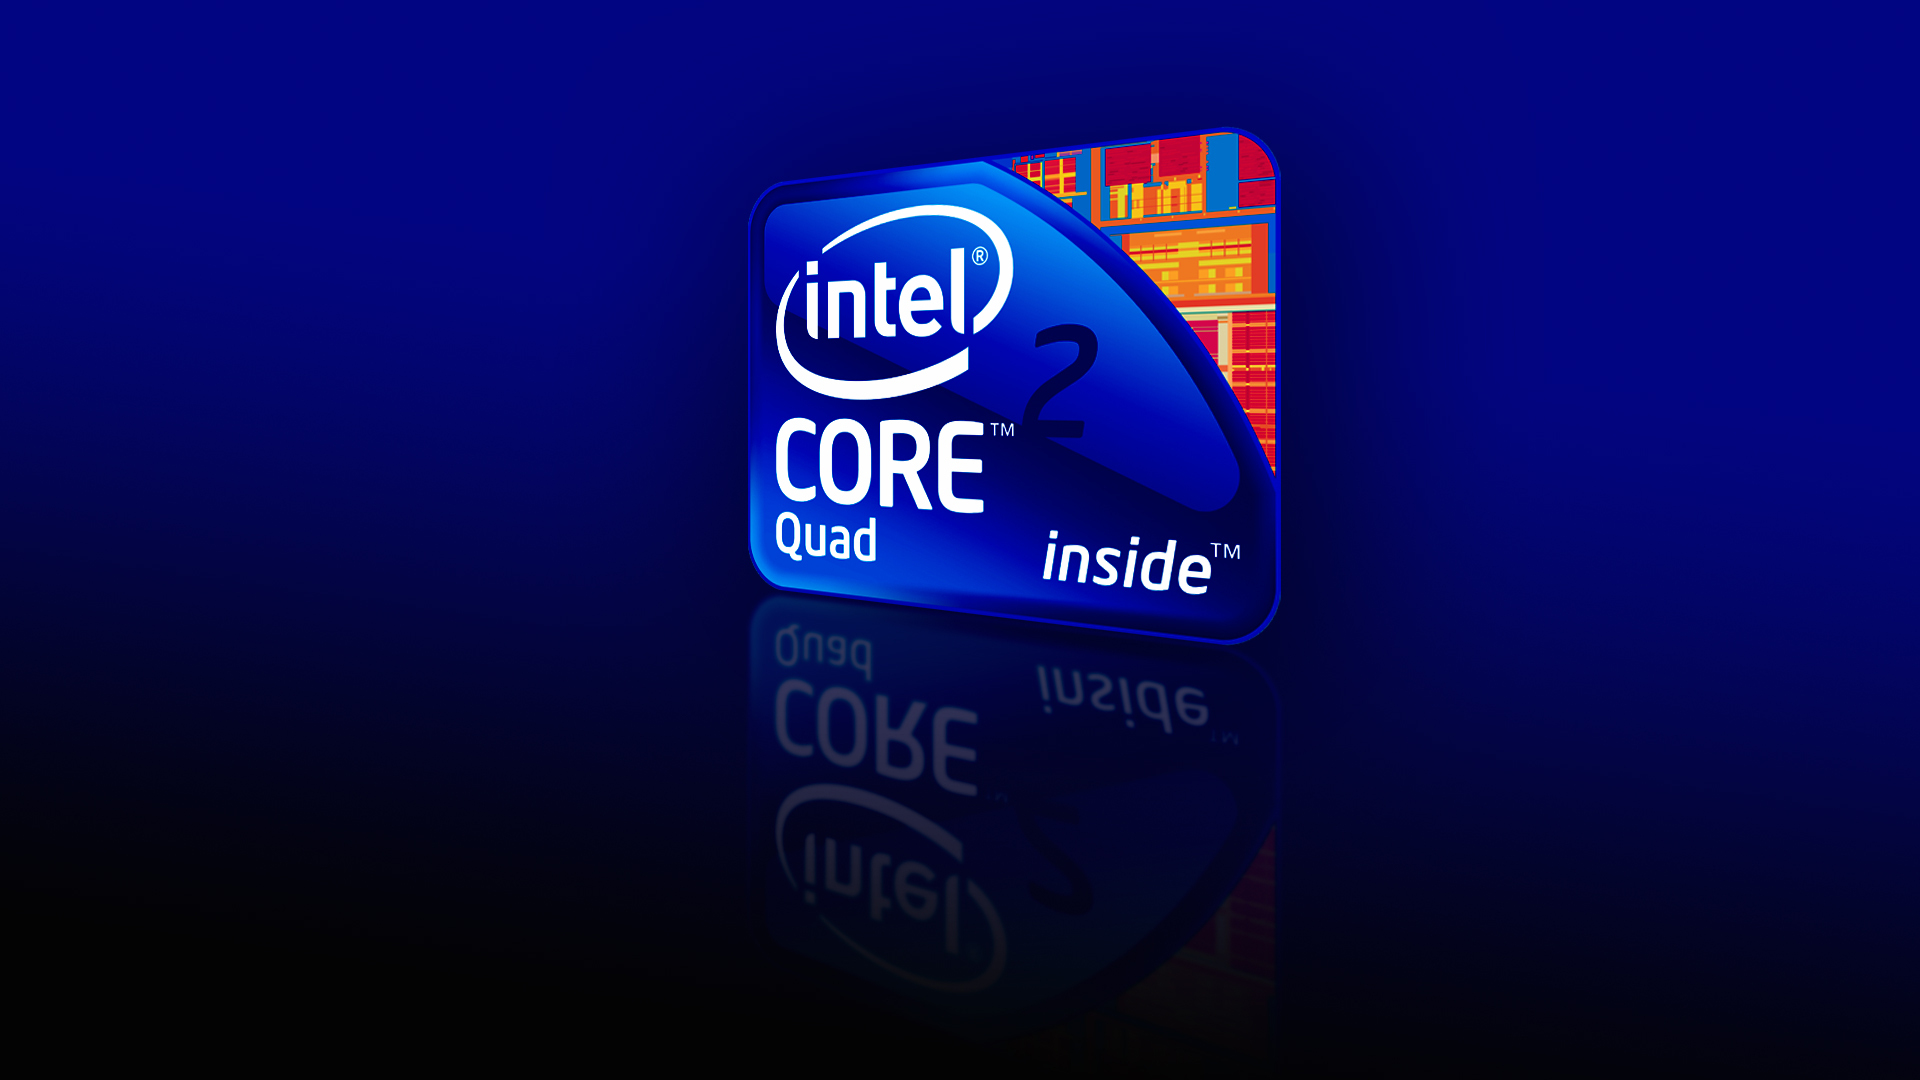 Intel core 2 quad core i7 logo 1080p wallpapers Rumah IT